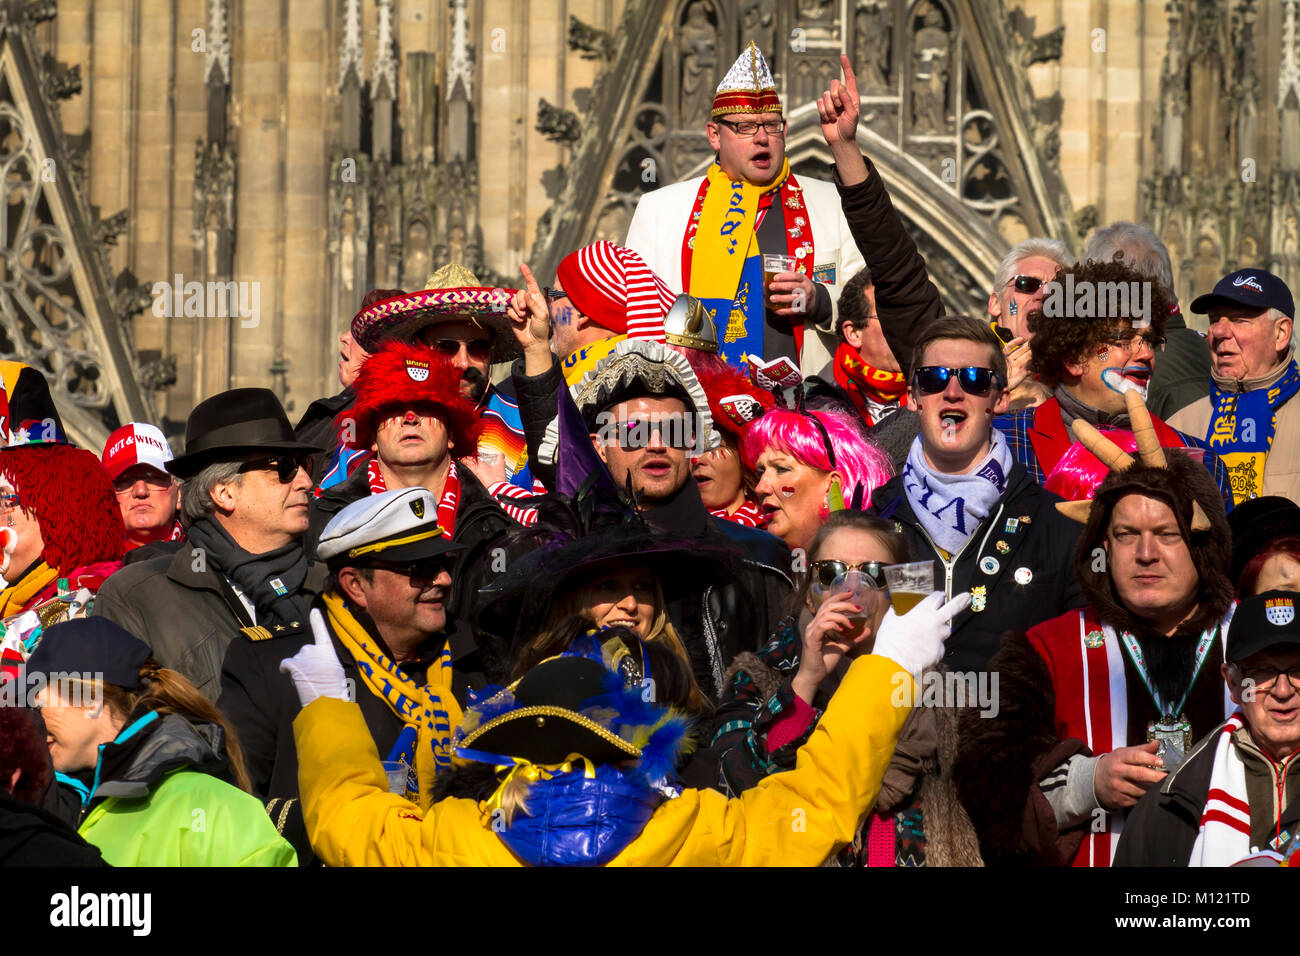 Germania, Colonia, Carnevale Martedì Grasso lunedì processione, spettatori su uno stand presso la cattedrale. Deutschland, Koeln, Karneval, Rosenmontagszug, Zuschaue Foto Stock